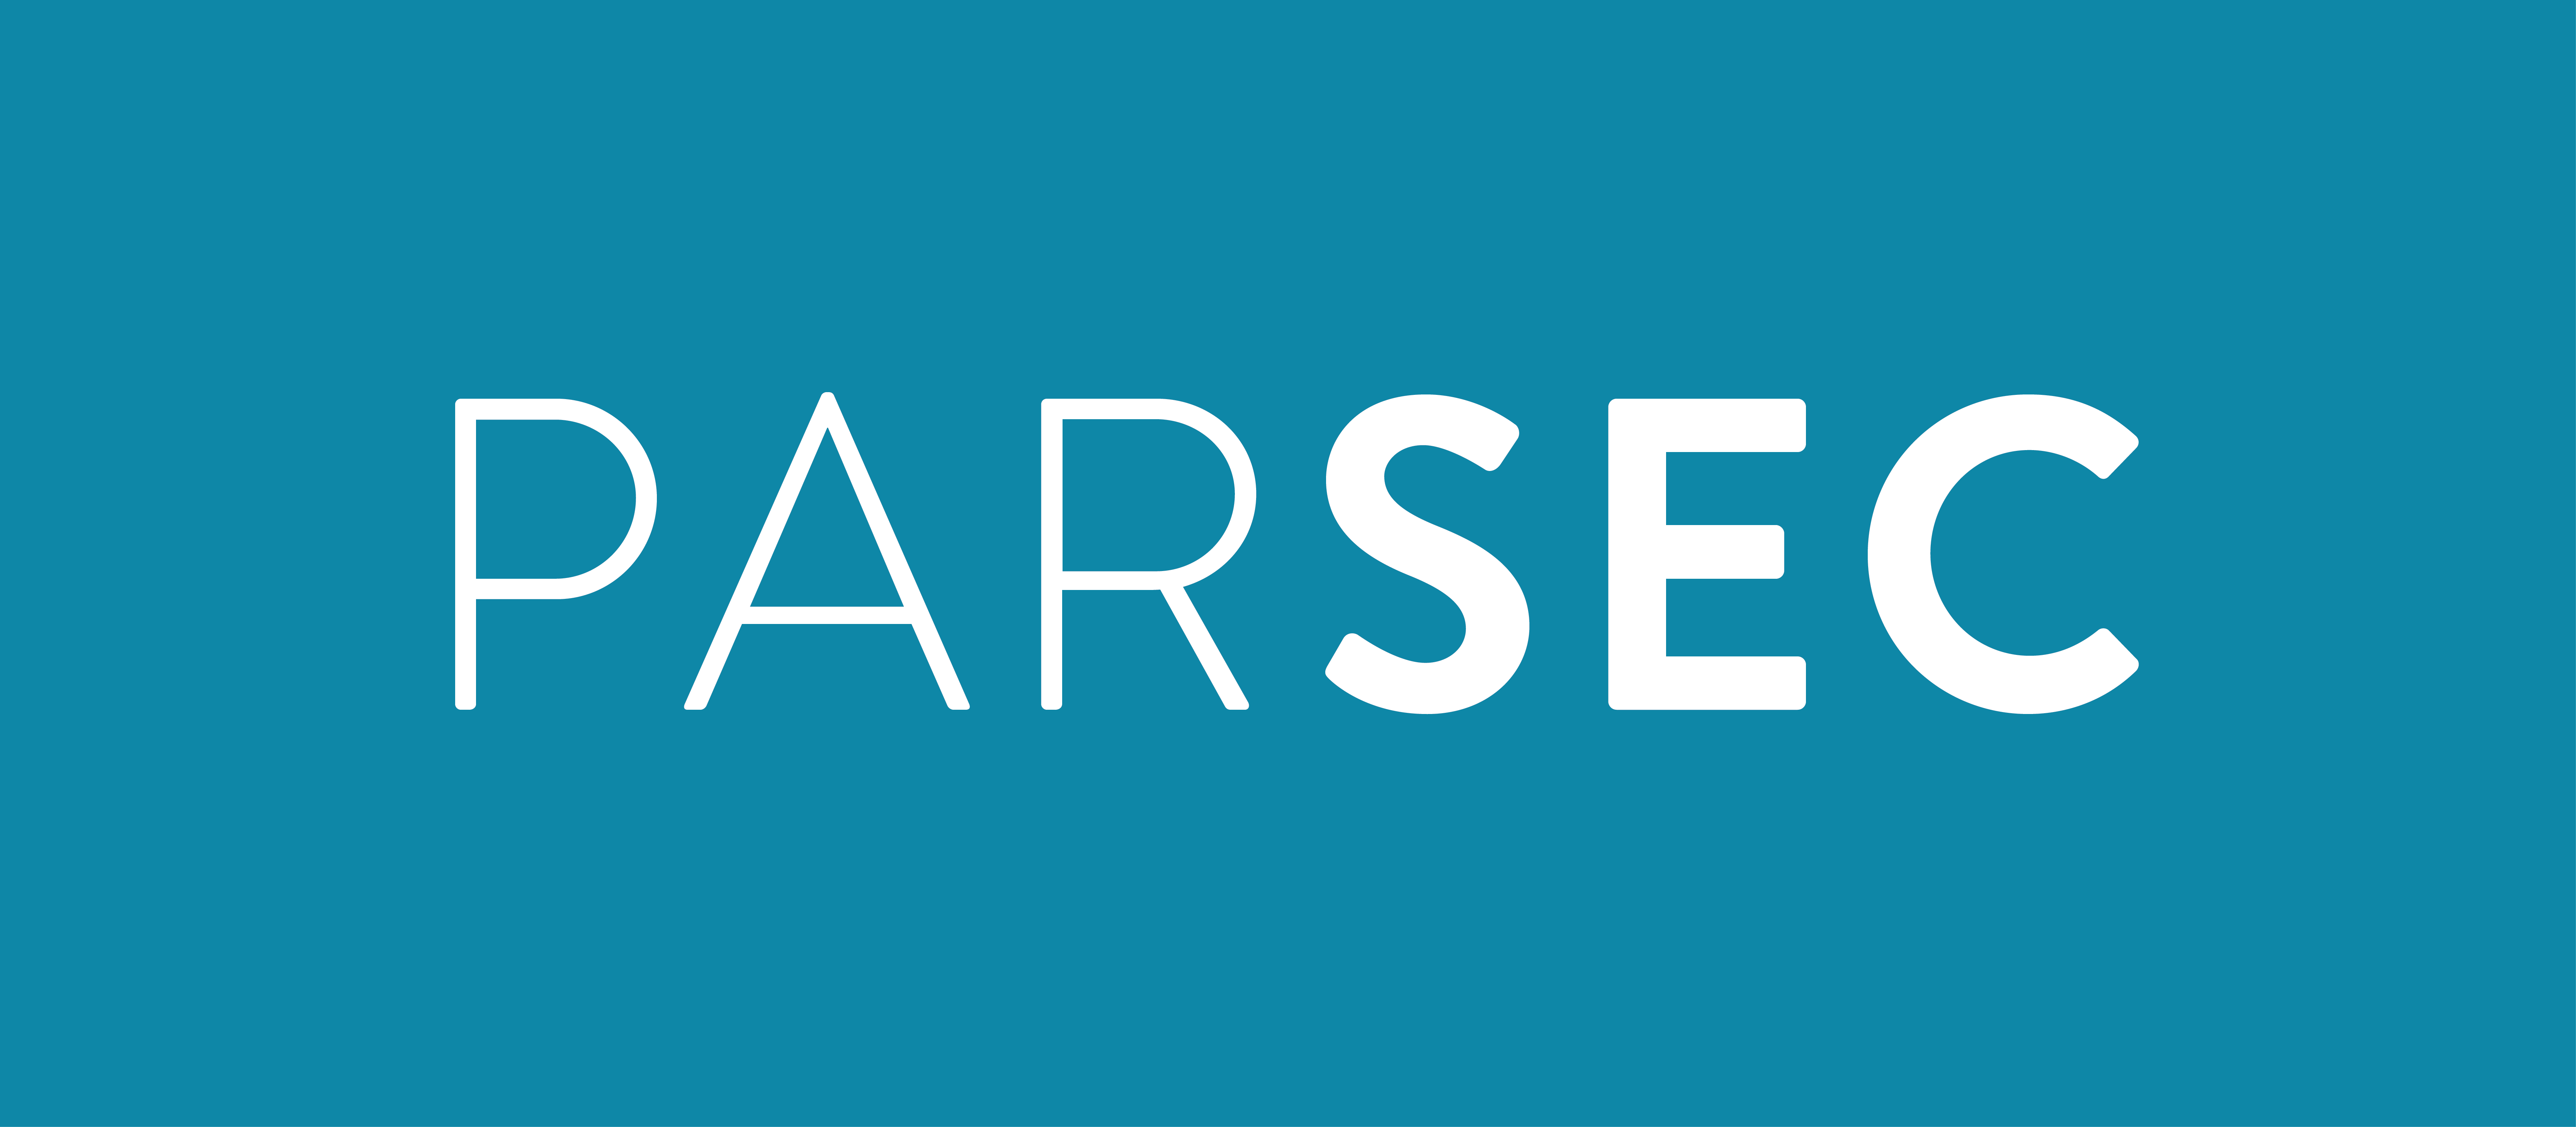 Parsec логотип. Парсек СКУД. Логотип Parseq Lab. Дистрибьютор Parsec.